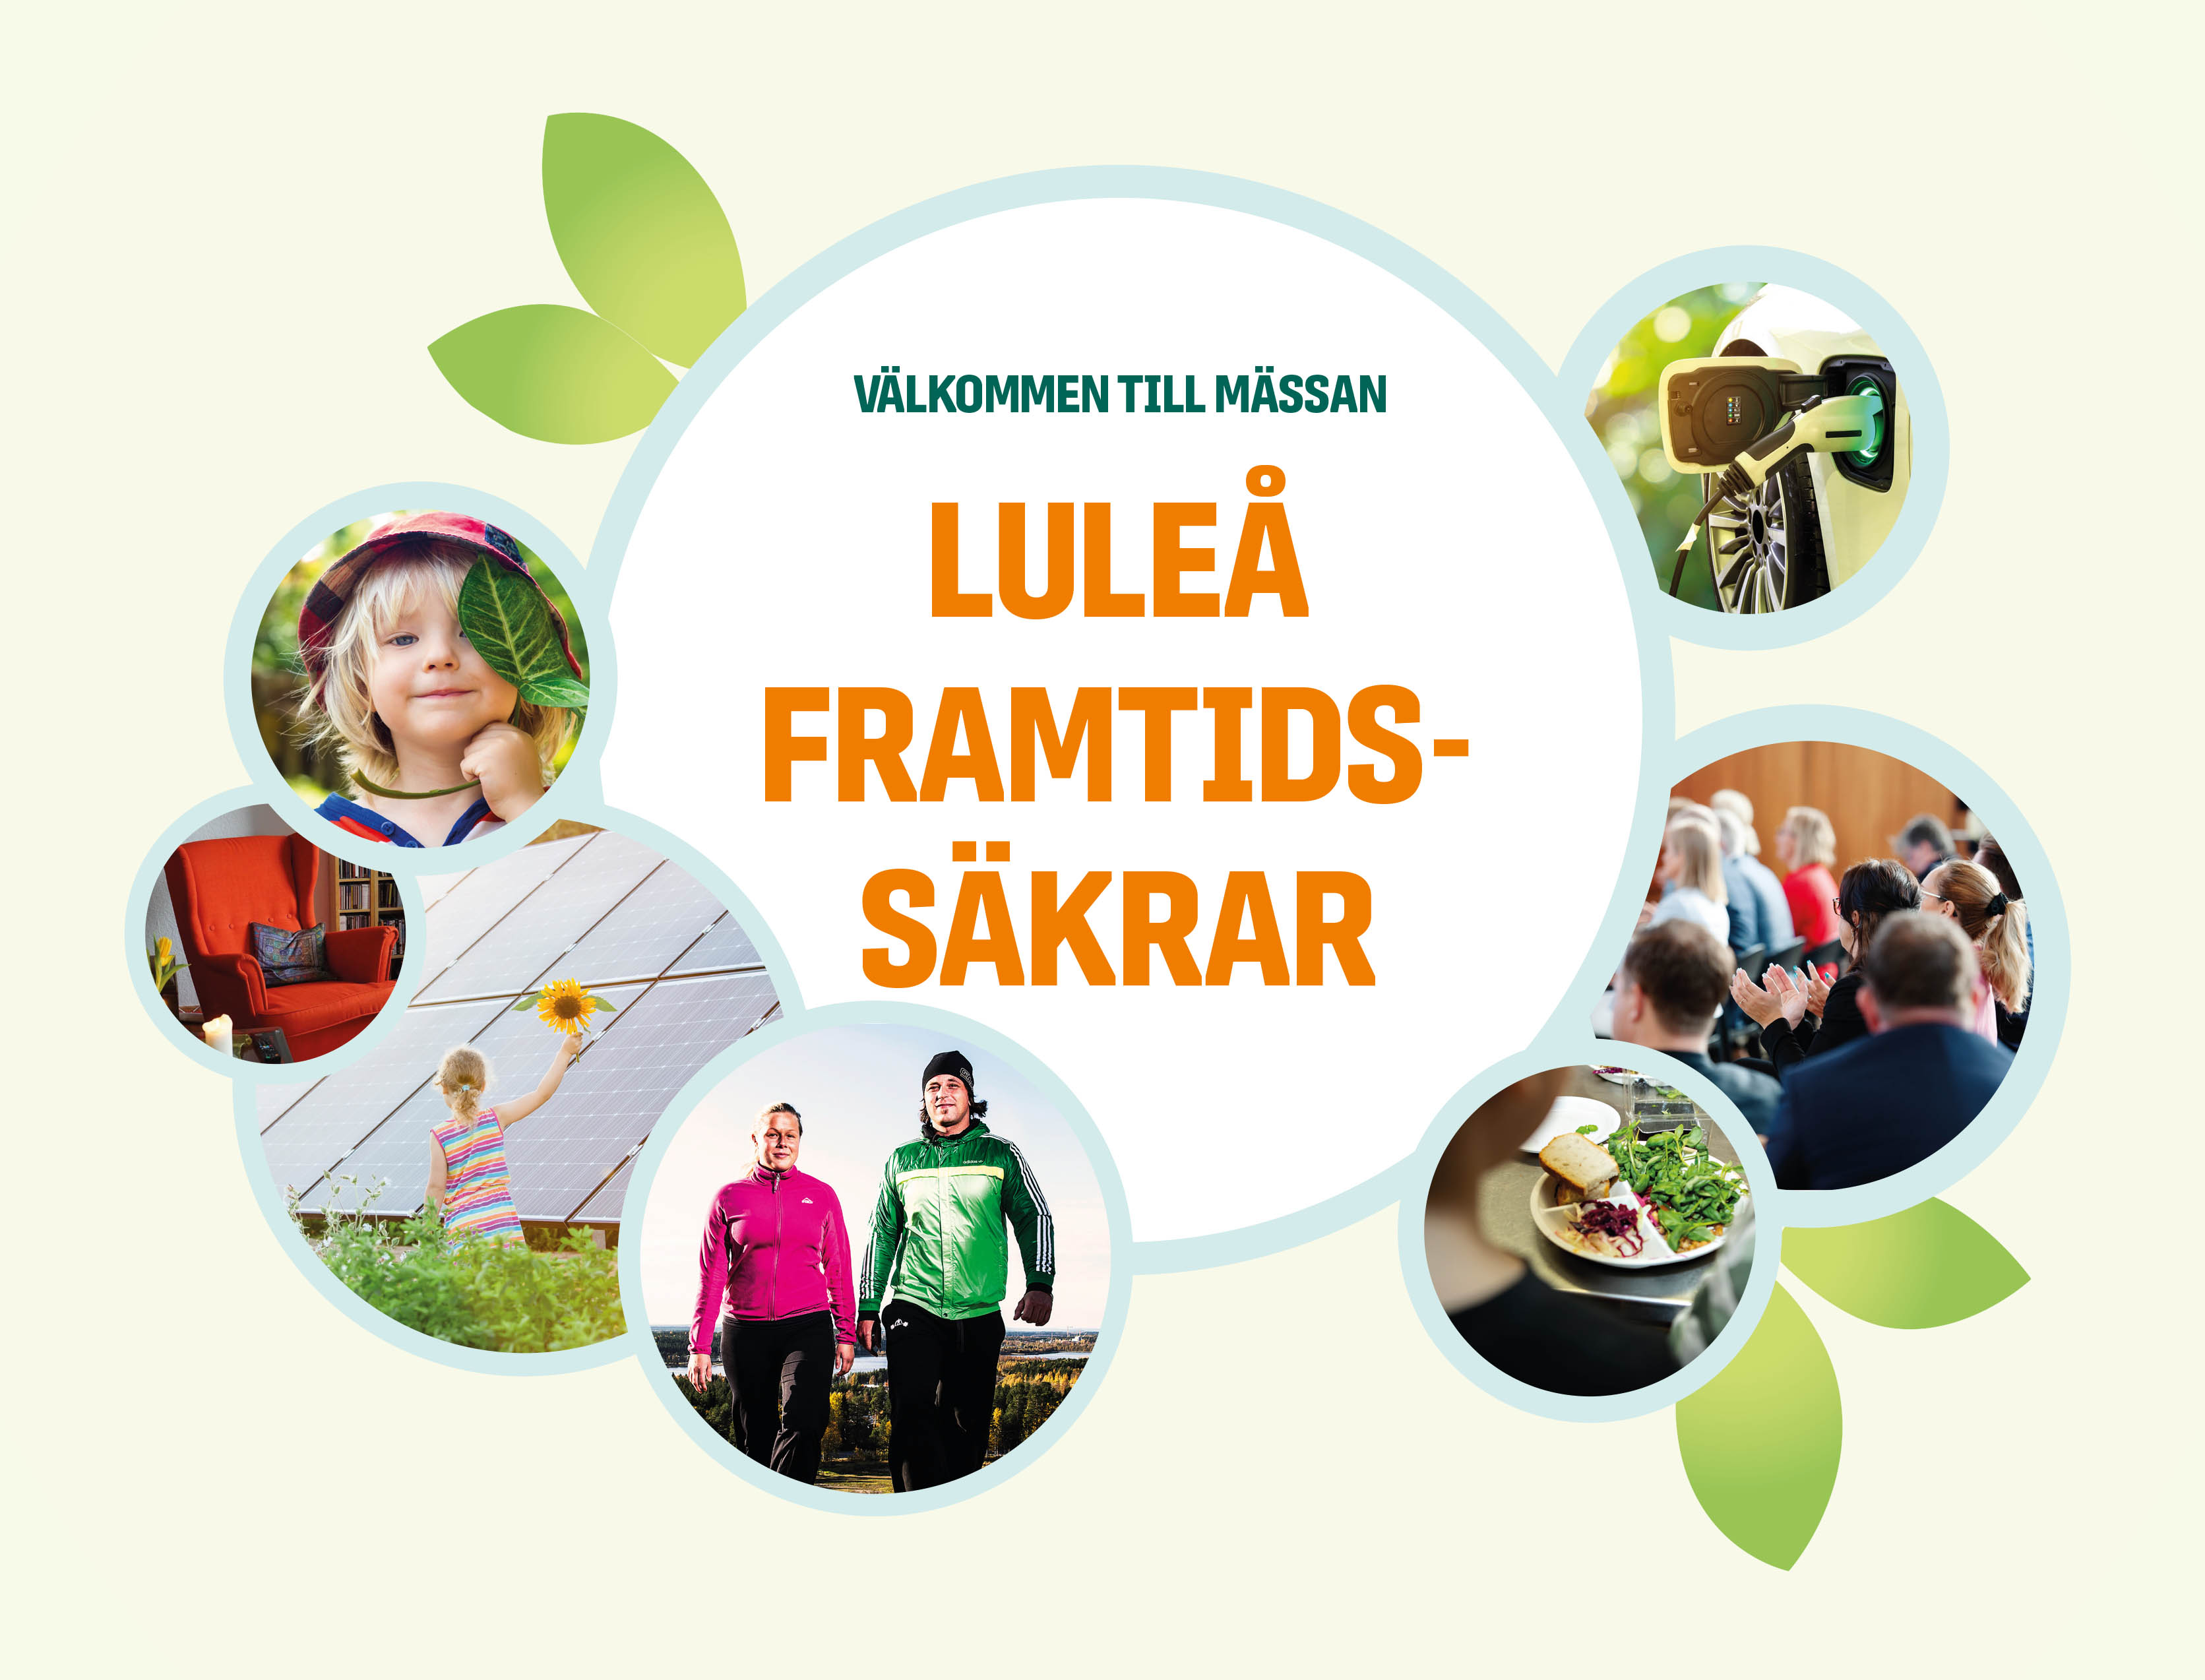 Välkommen till höstens viktigaste mässa - Luleå framtidssäkrar 17 - 18 september